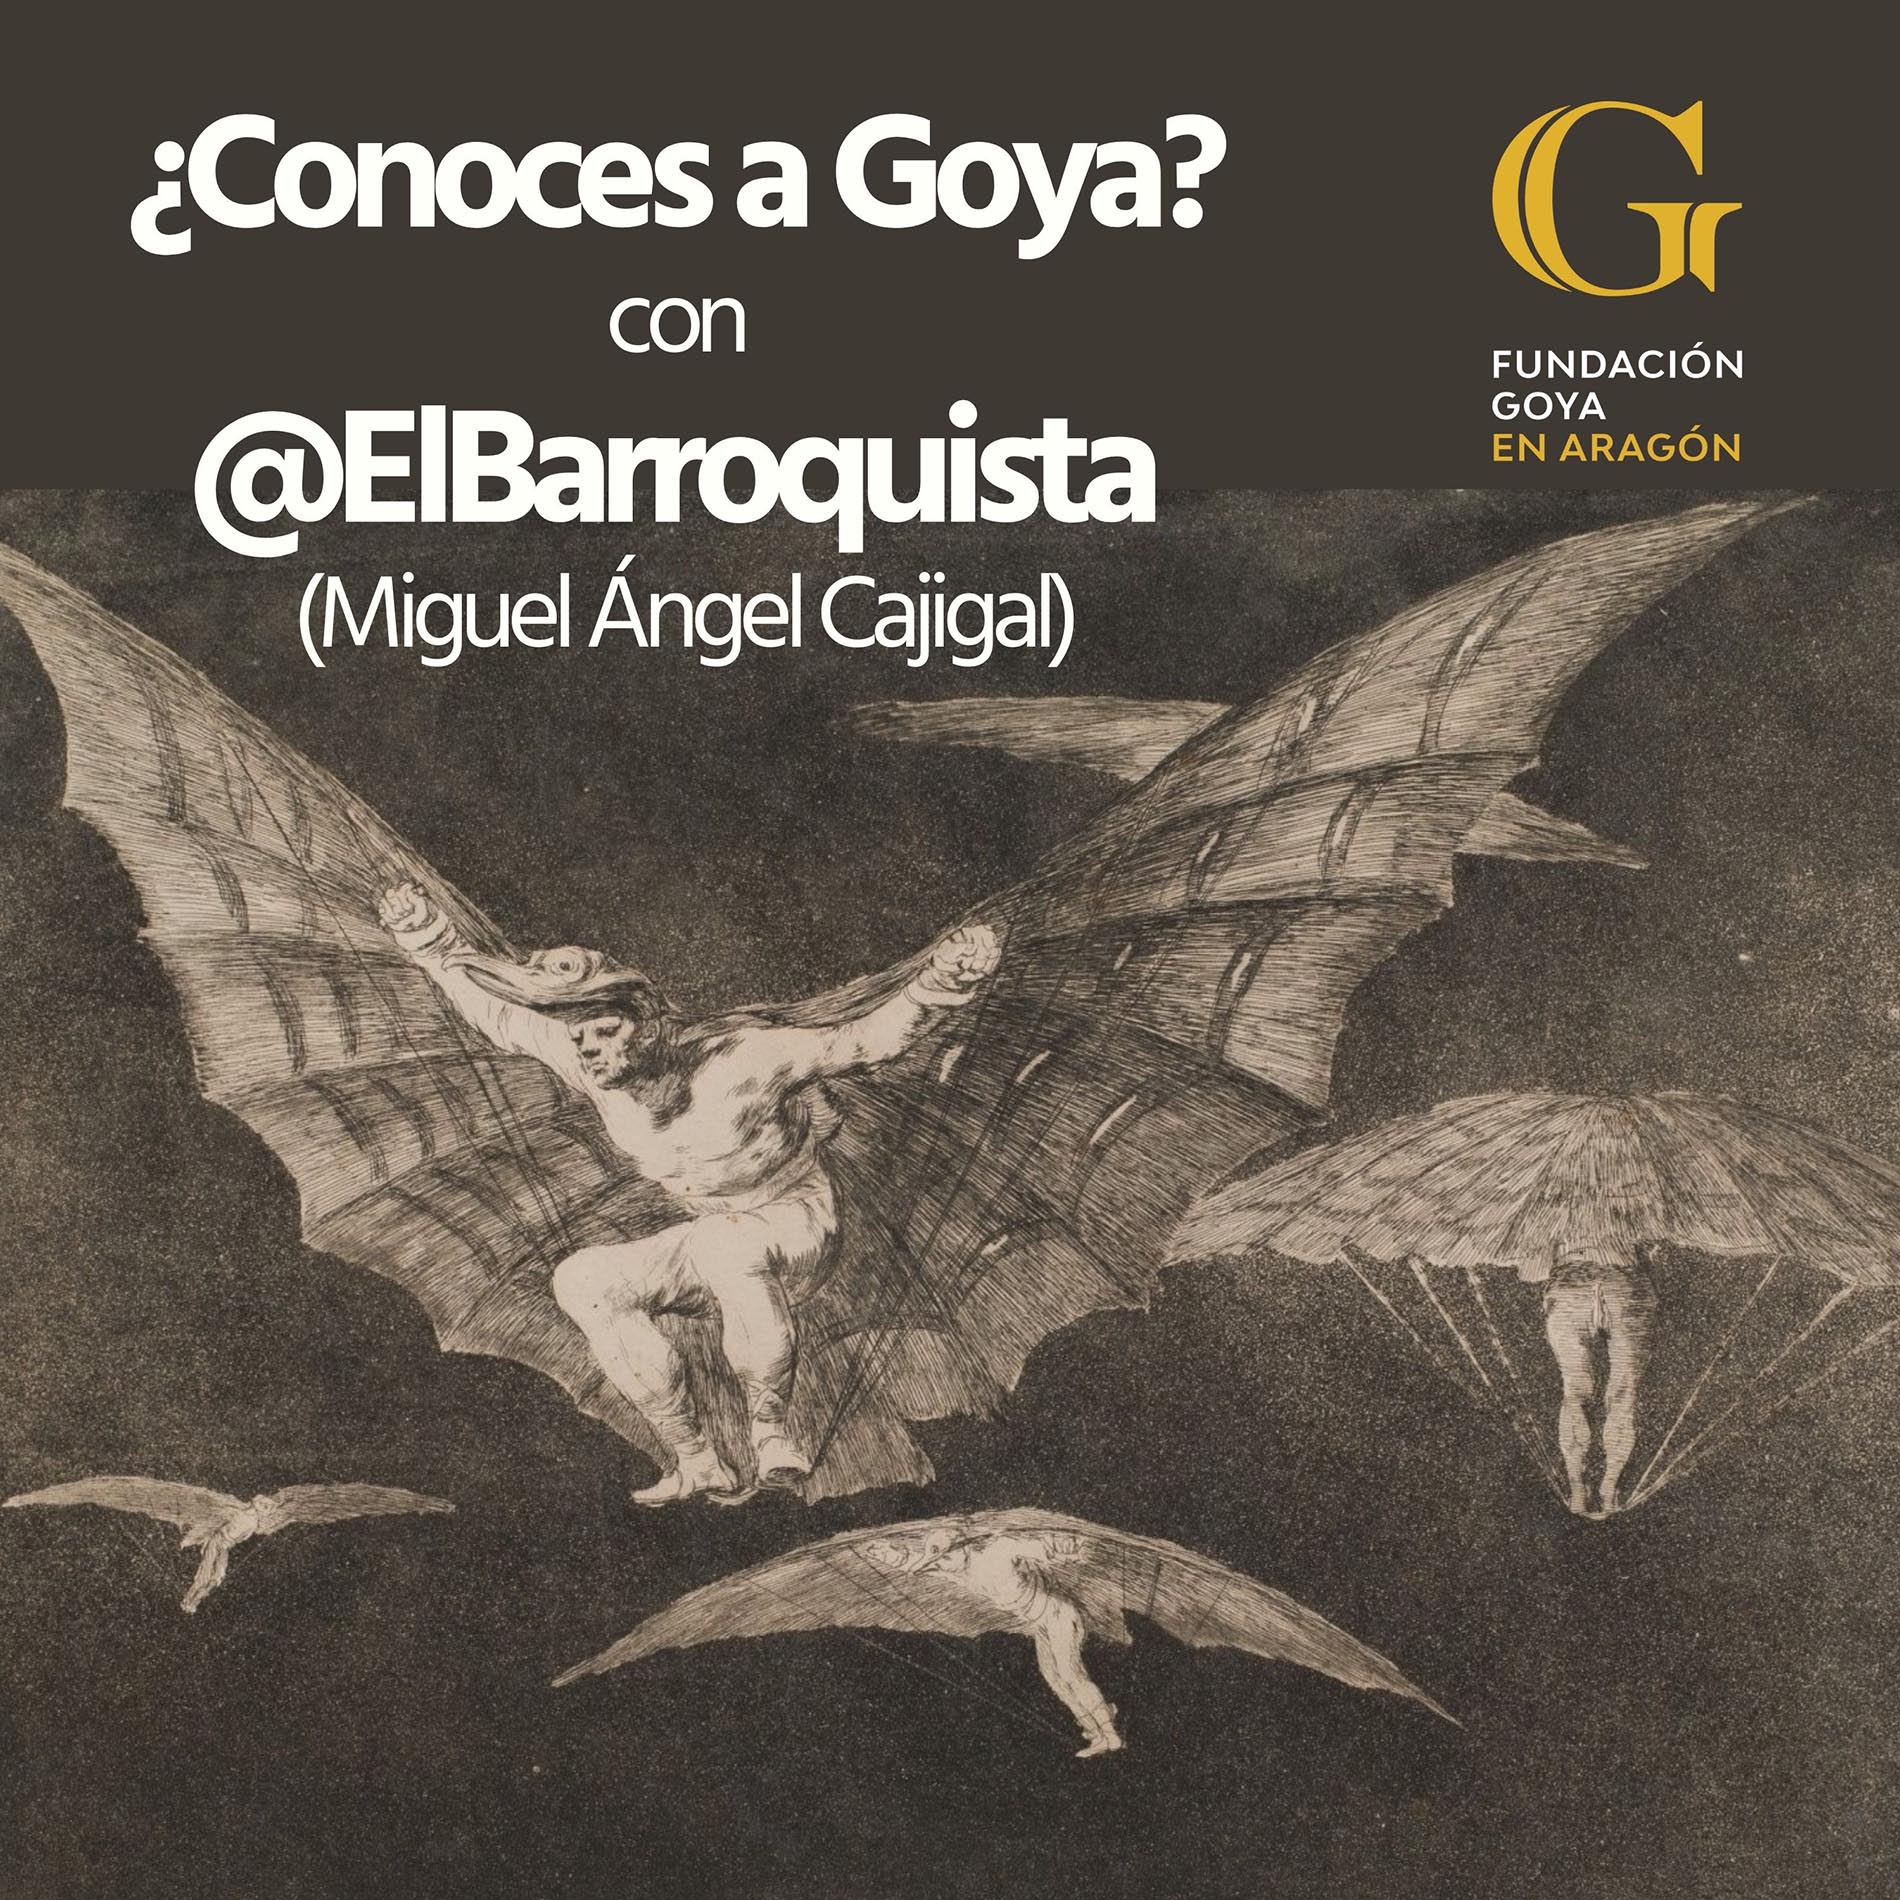 ElBarroquista reflexionará sobre la vida y obra de Goya en el primer podcast de la Fundación Goya en Aragón